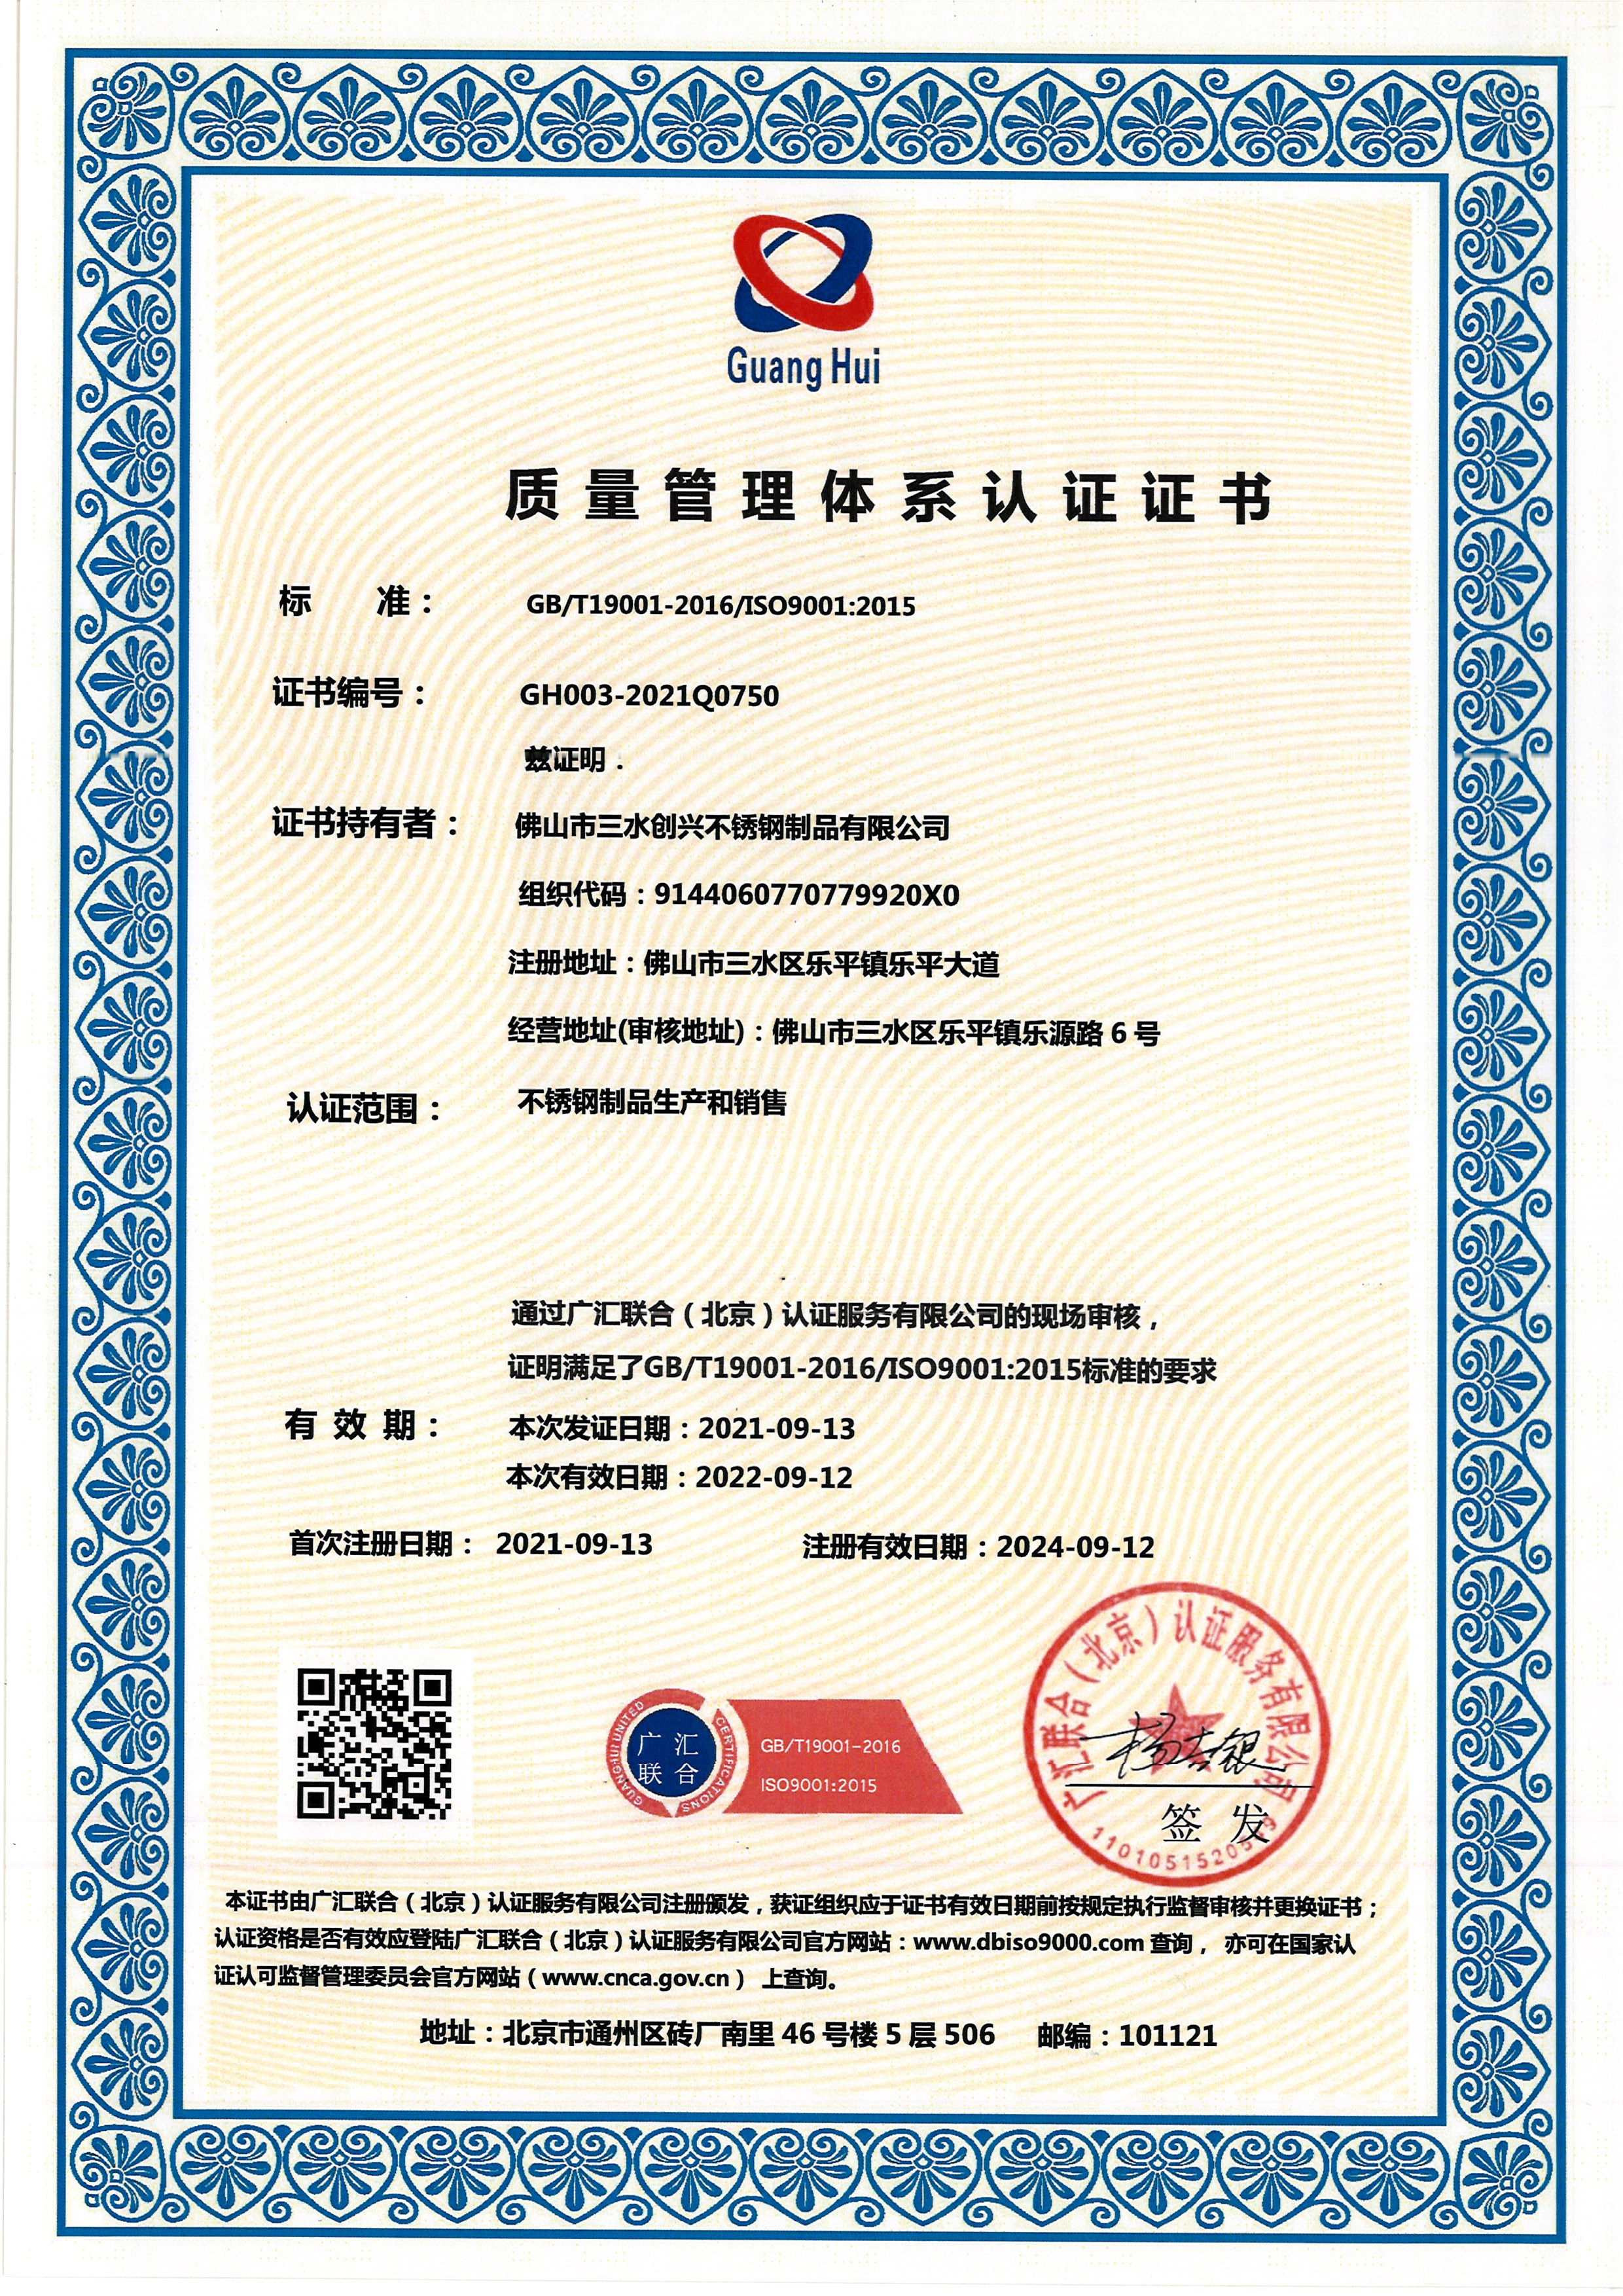 Kalite yönetim sistemi sertifikası